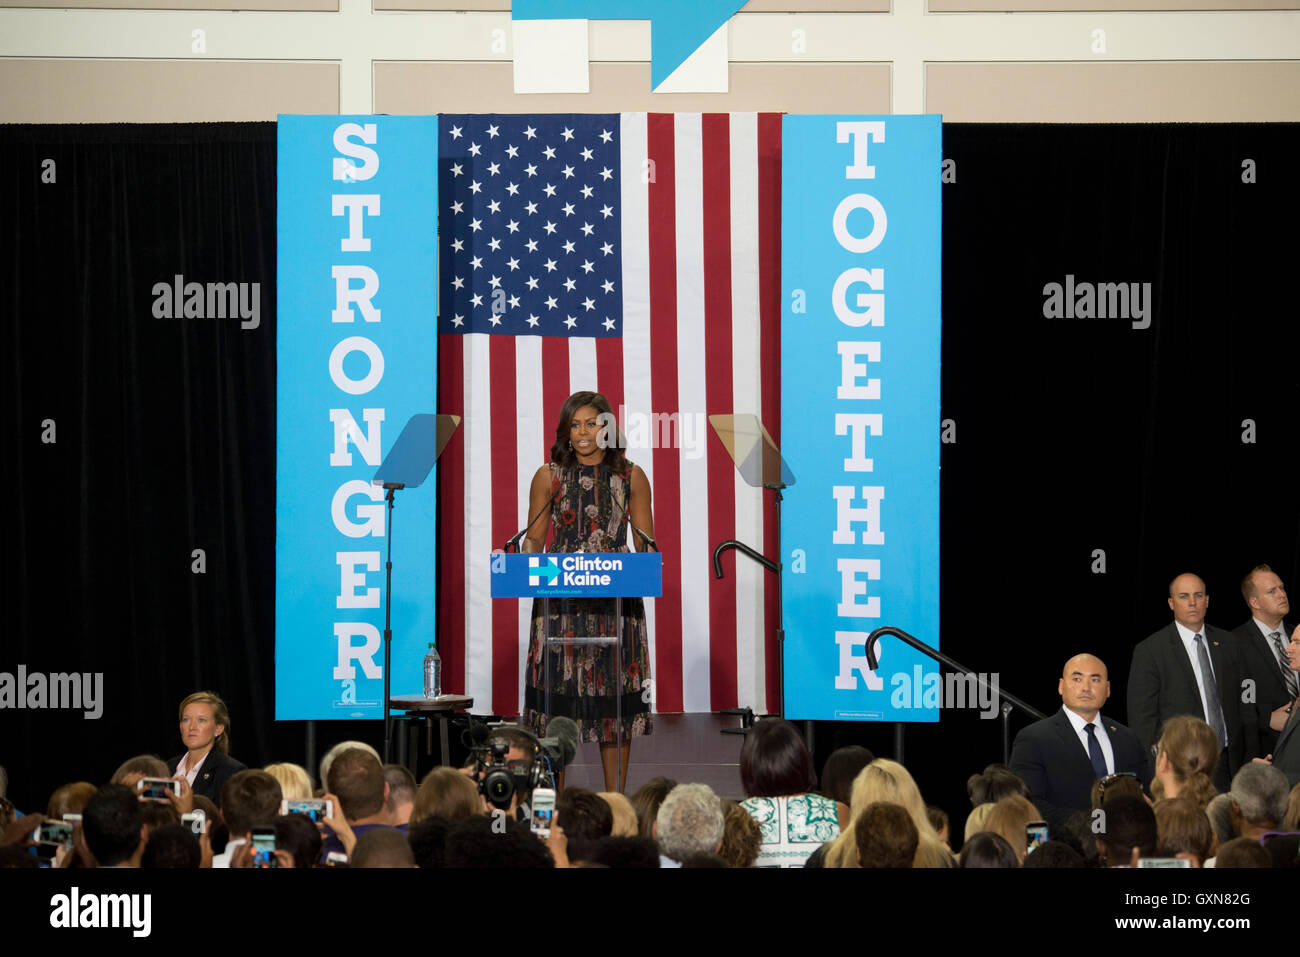 Fairfax, VA Sep16, 2016, USA: First Lady Michelle Obama erscheint bei einer Kundgebung auf dem Campus der George Mason University in Fairfax, VA.  Patsy Lynch/Alamy Live-Nachrichten Stockfoto